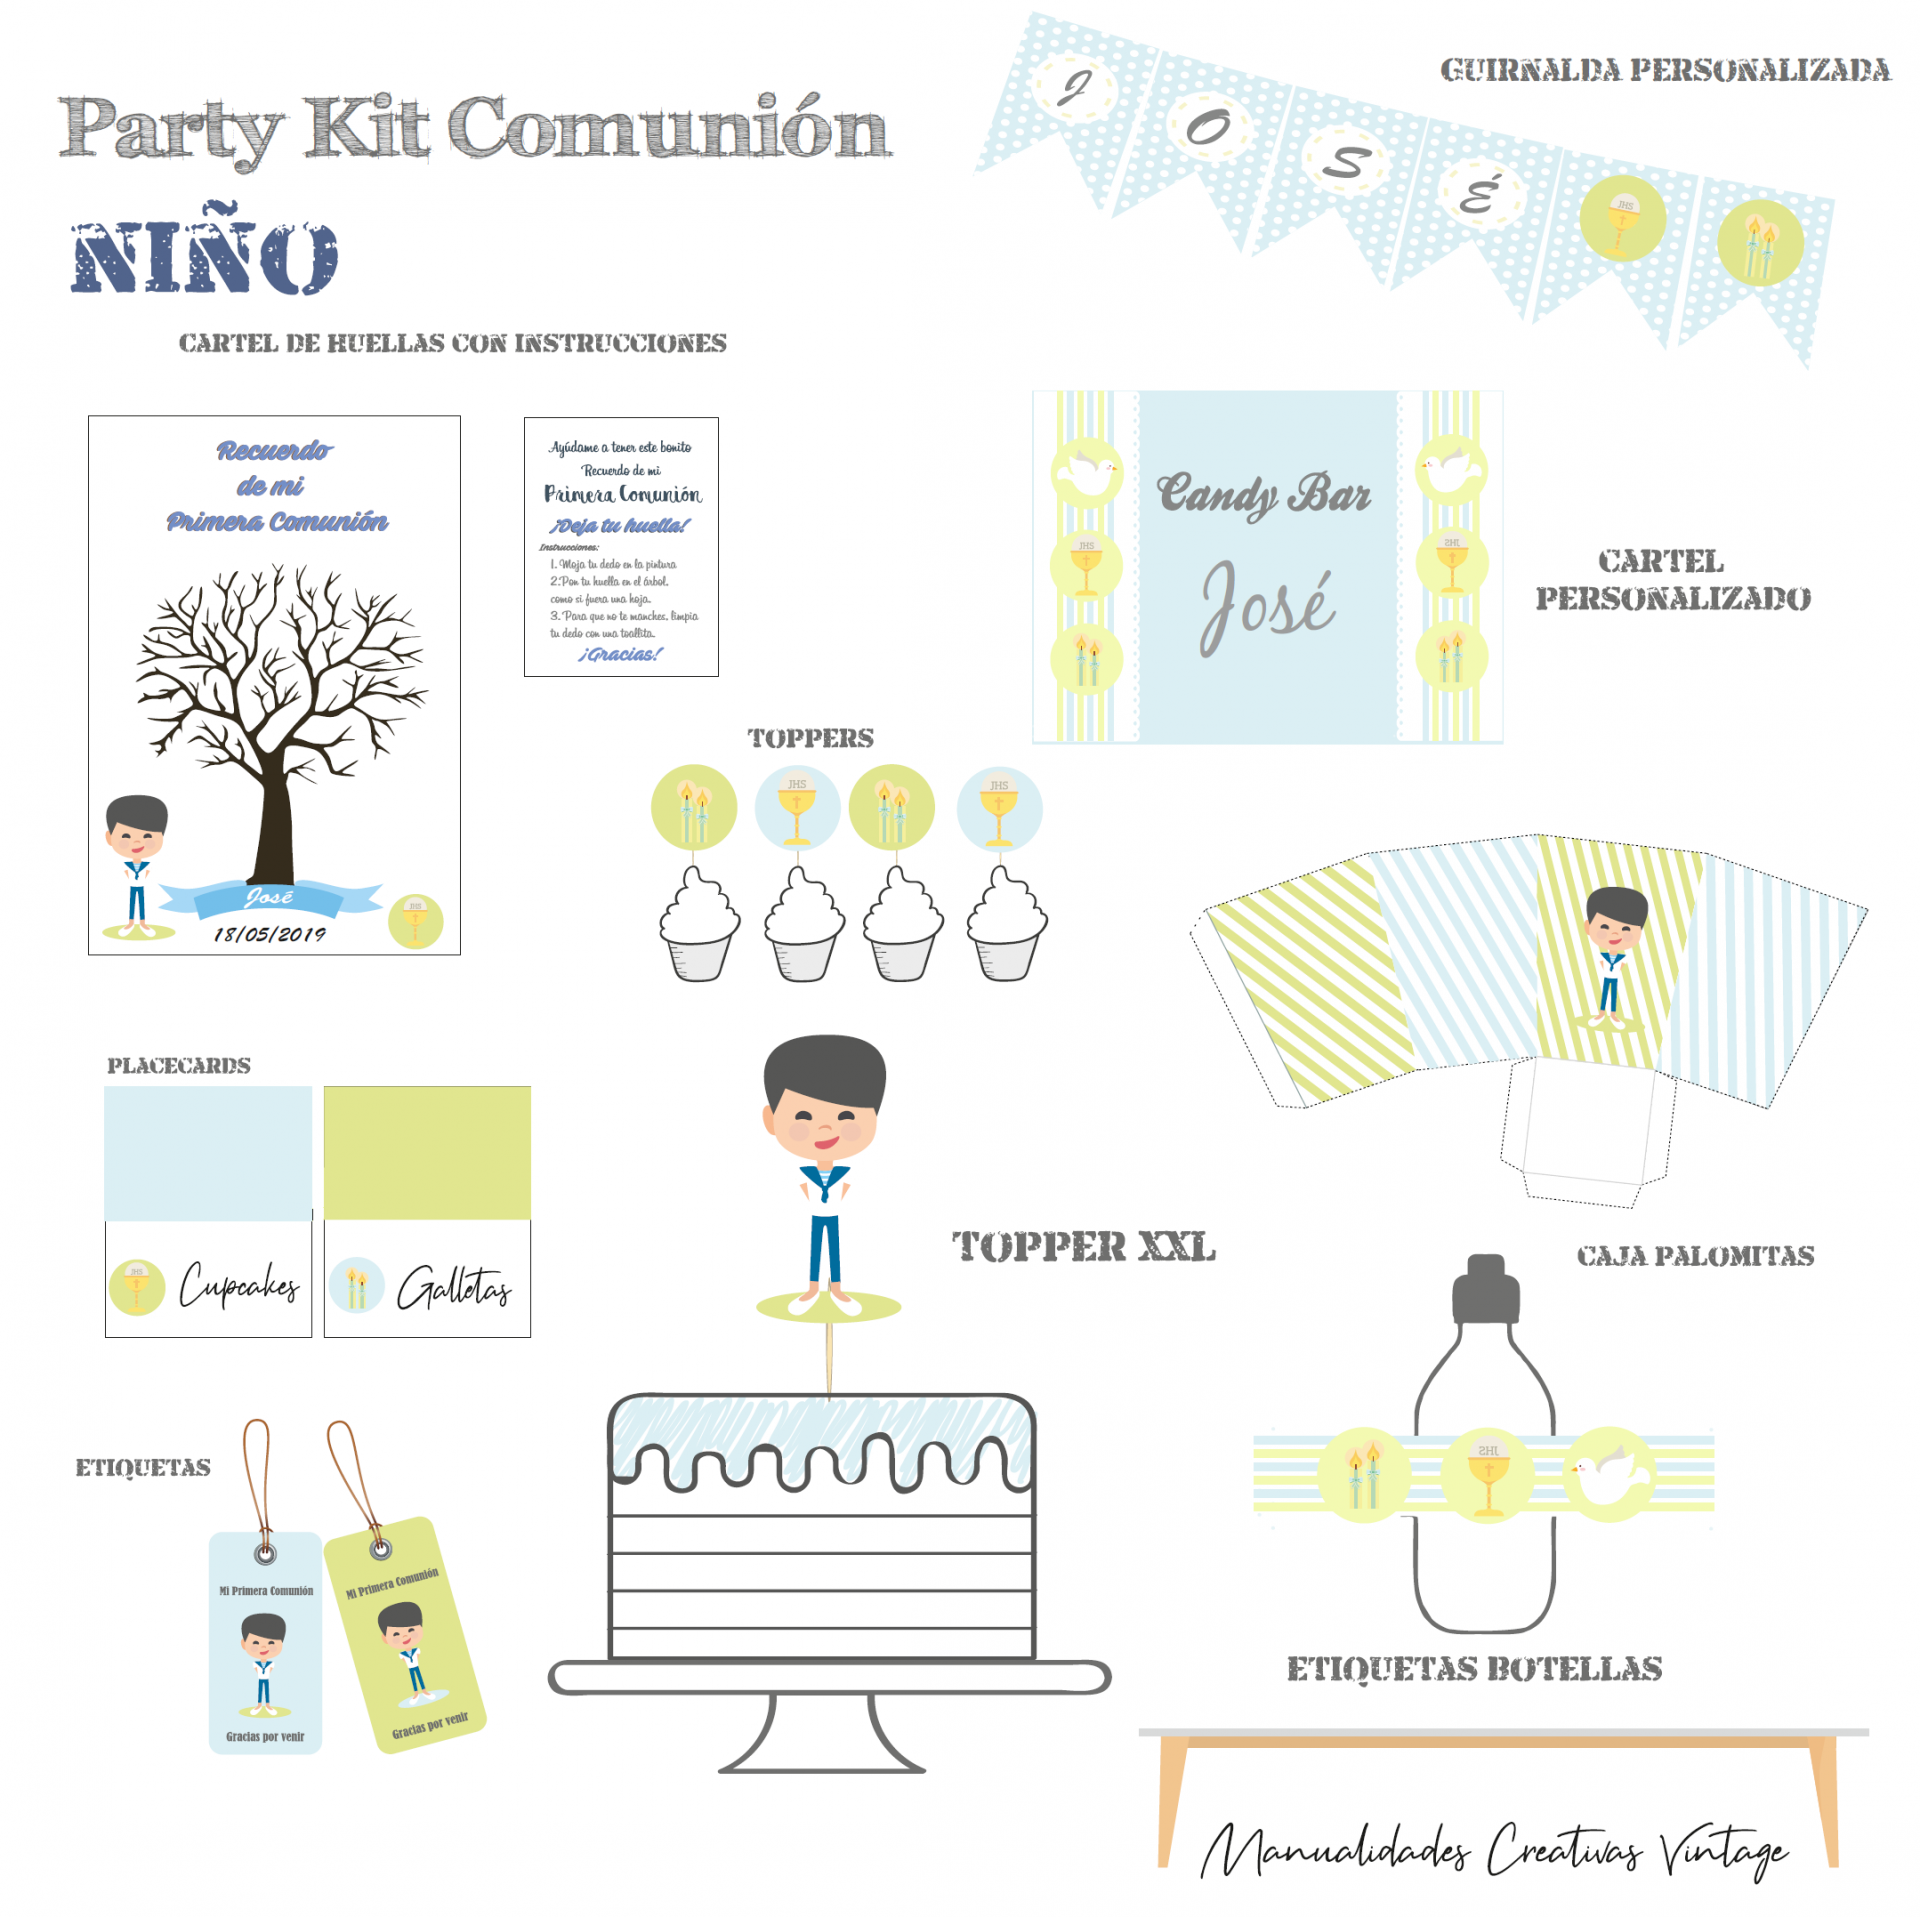 Party kit comunion niño